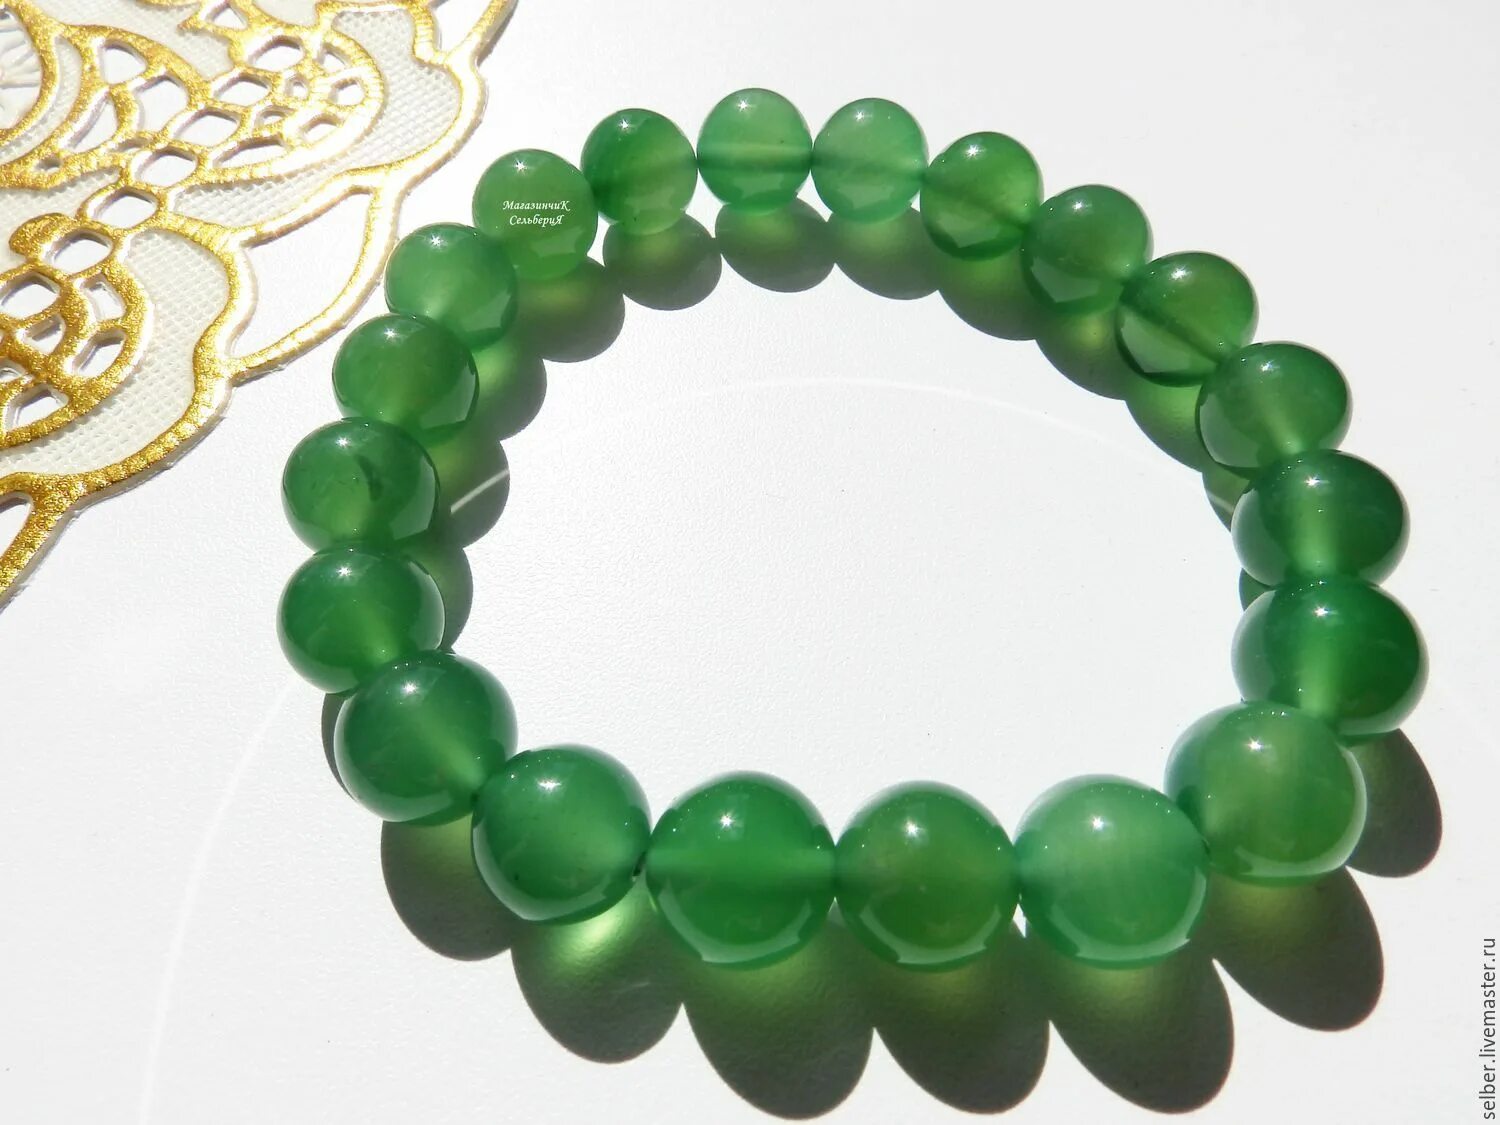 Сангелит браслет зеленый агат. Браслет с зеленым агатом. Агат зеленый с ангелитом браслет. Зеленый камень водорослевый агат браслет.